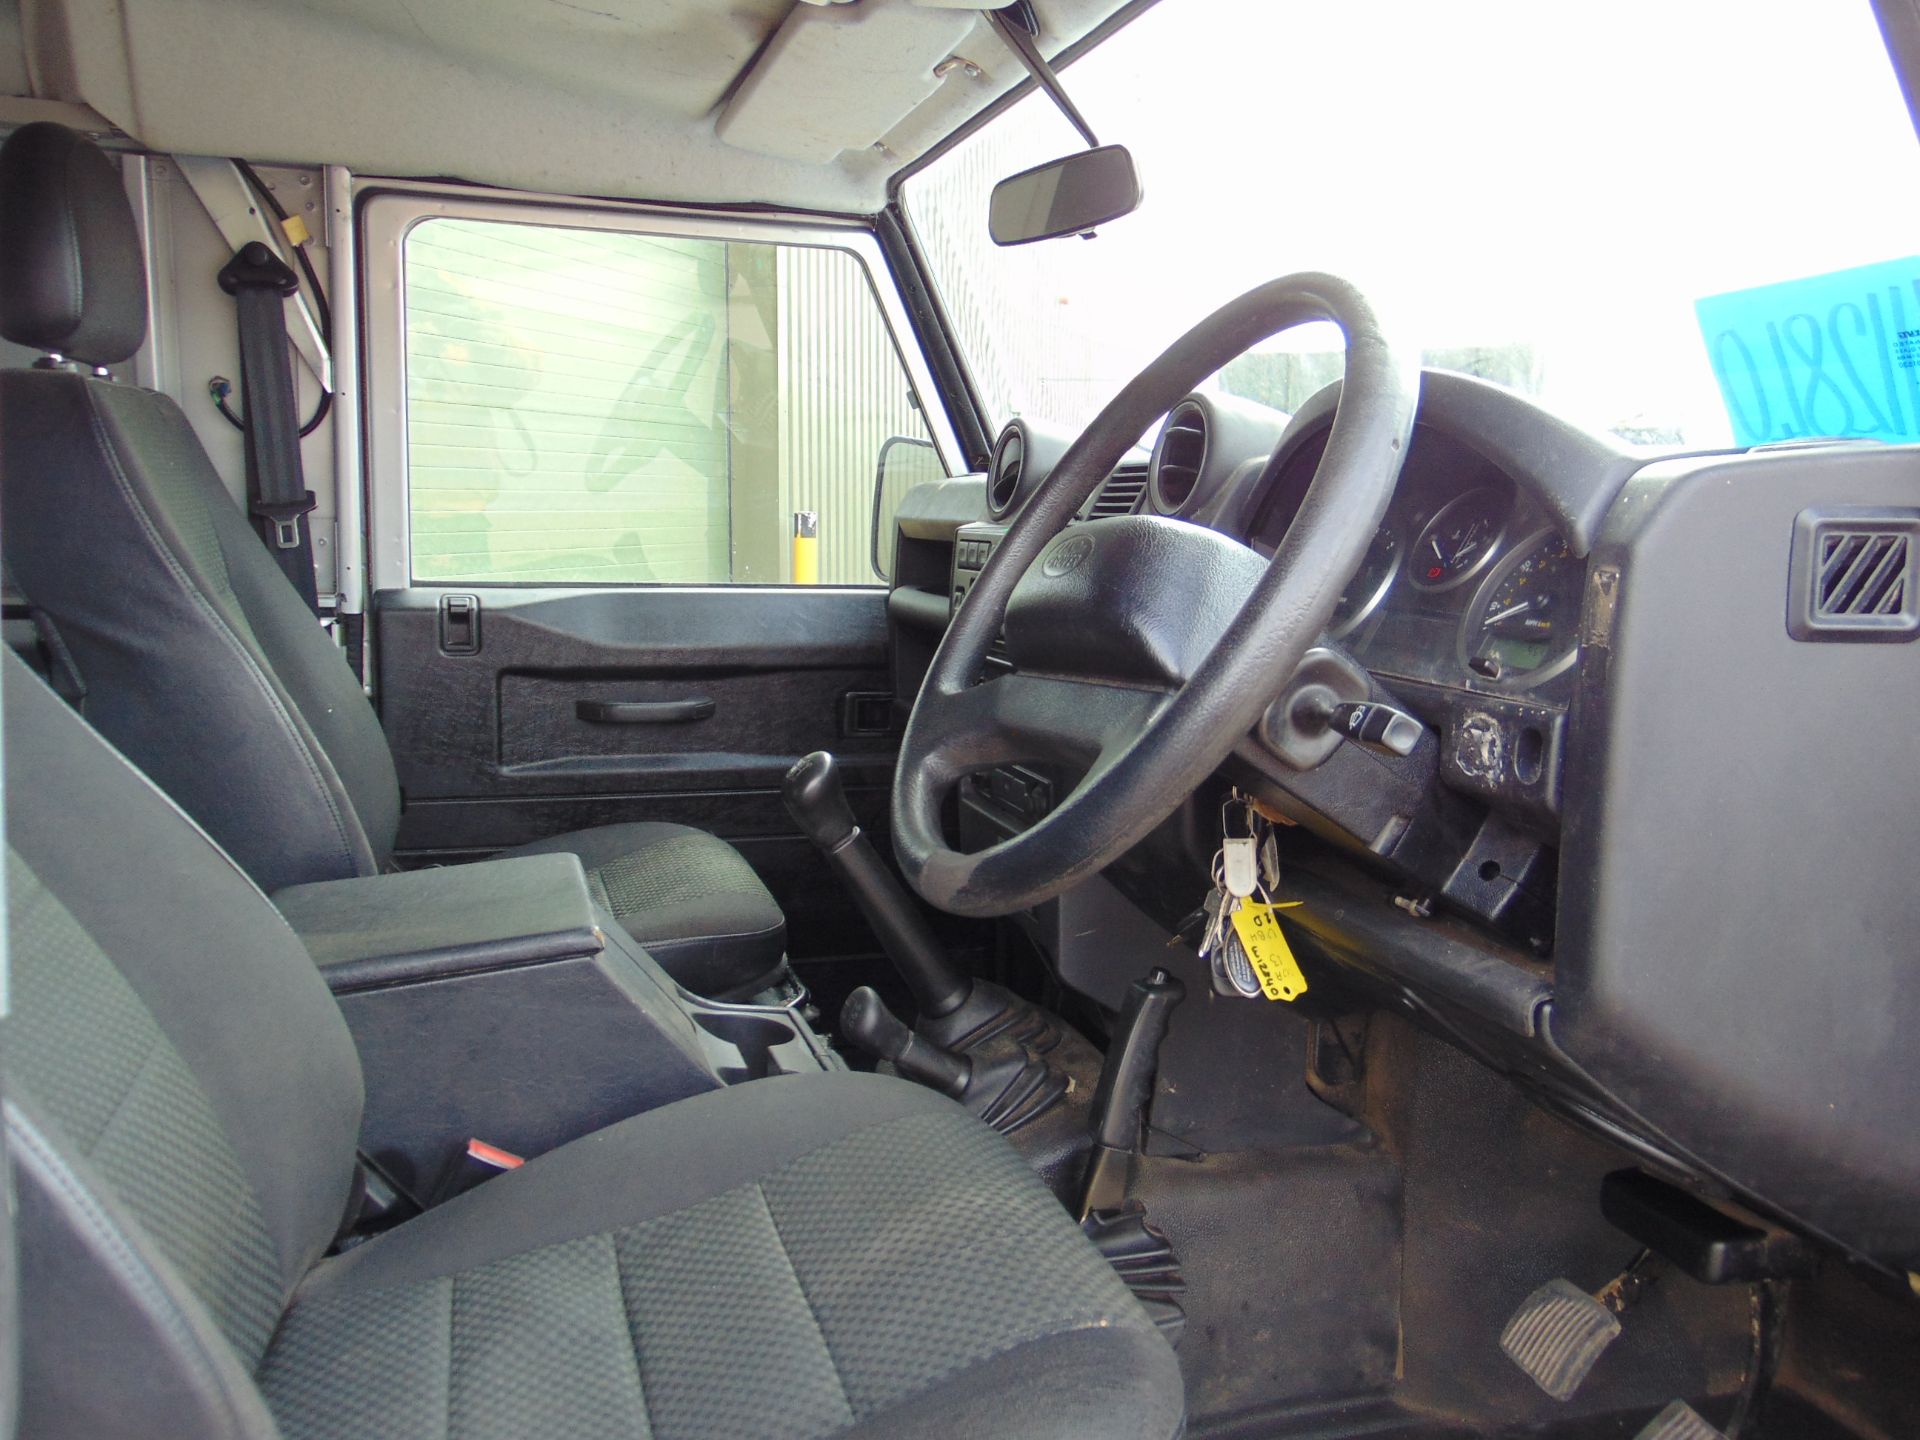 1 Owner 2013 Land Rover Defender 110 Puma hardtop 4x4 Utility vehicle (mobile workshop) - Image 24 of 32